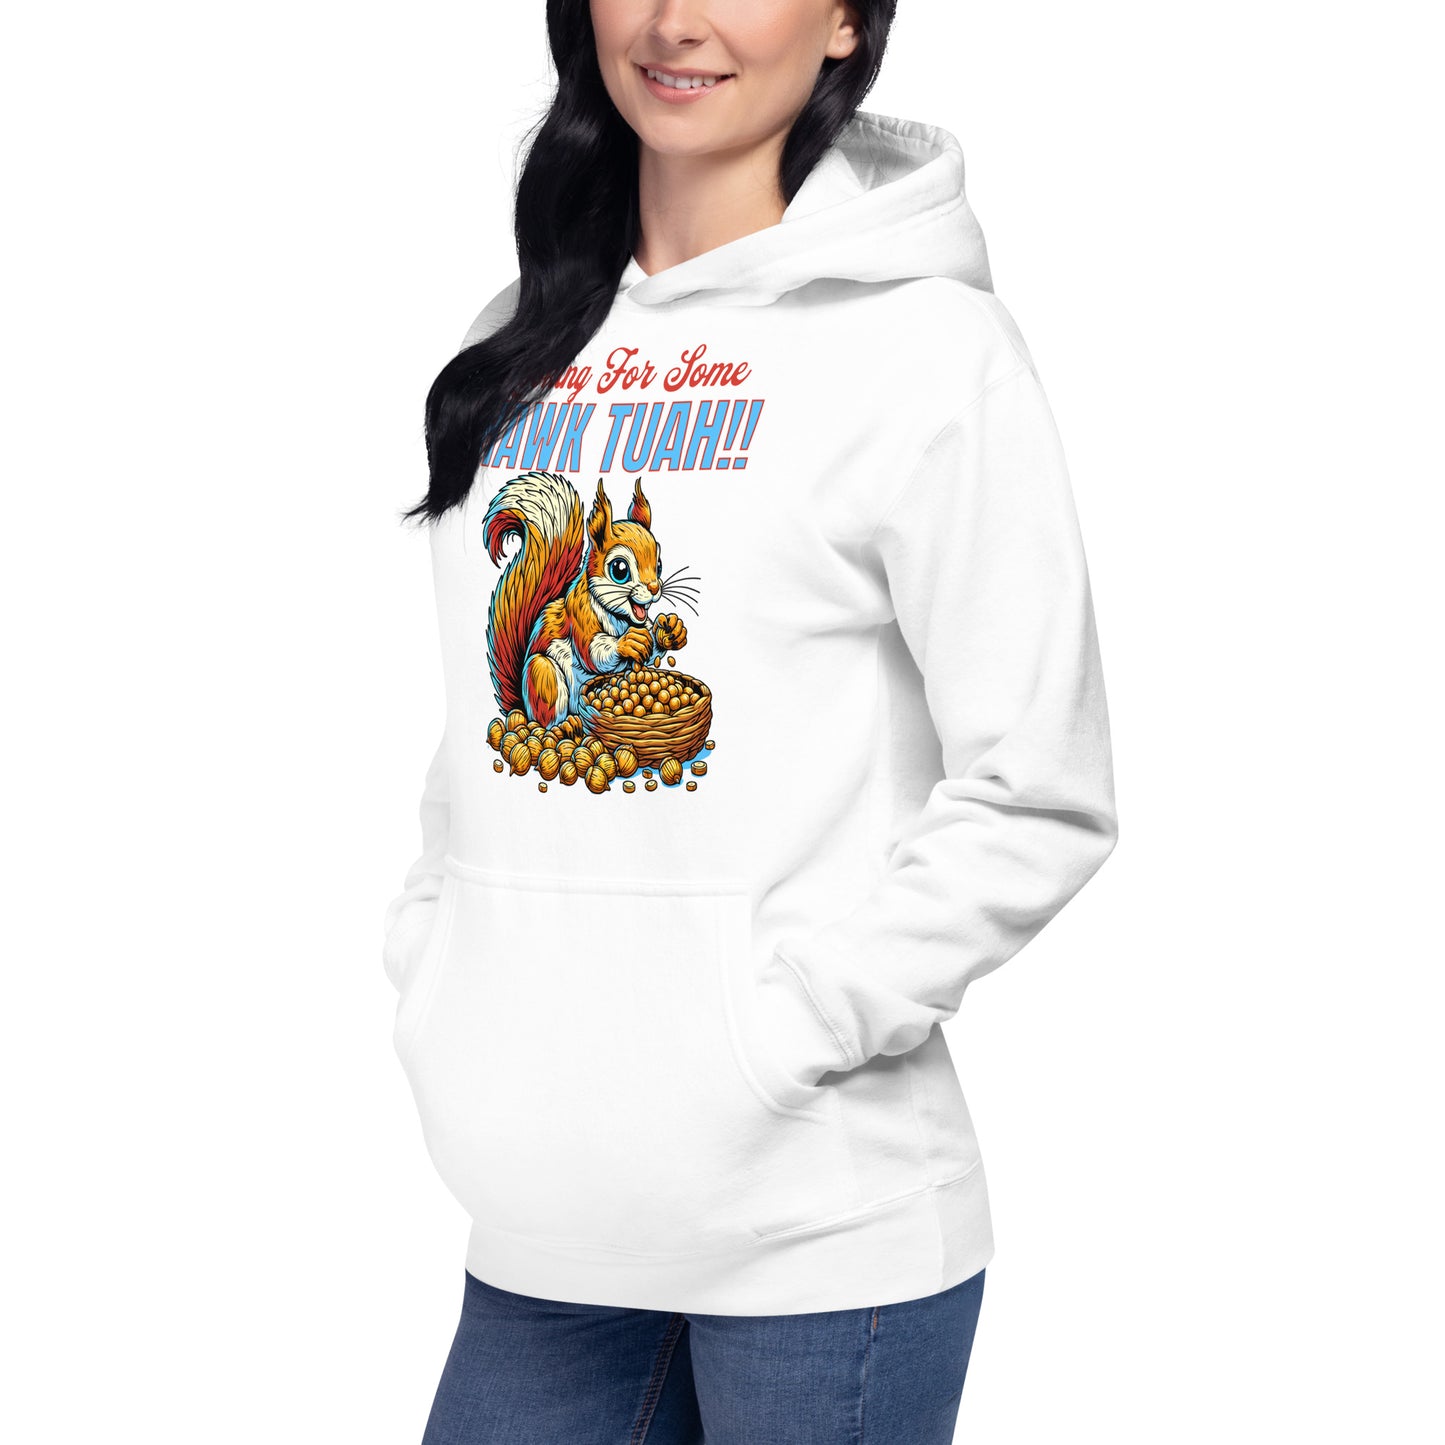 hawk tuah!! custom hoodie funny viral novelty hoodie